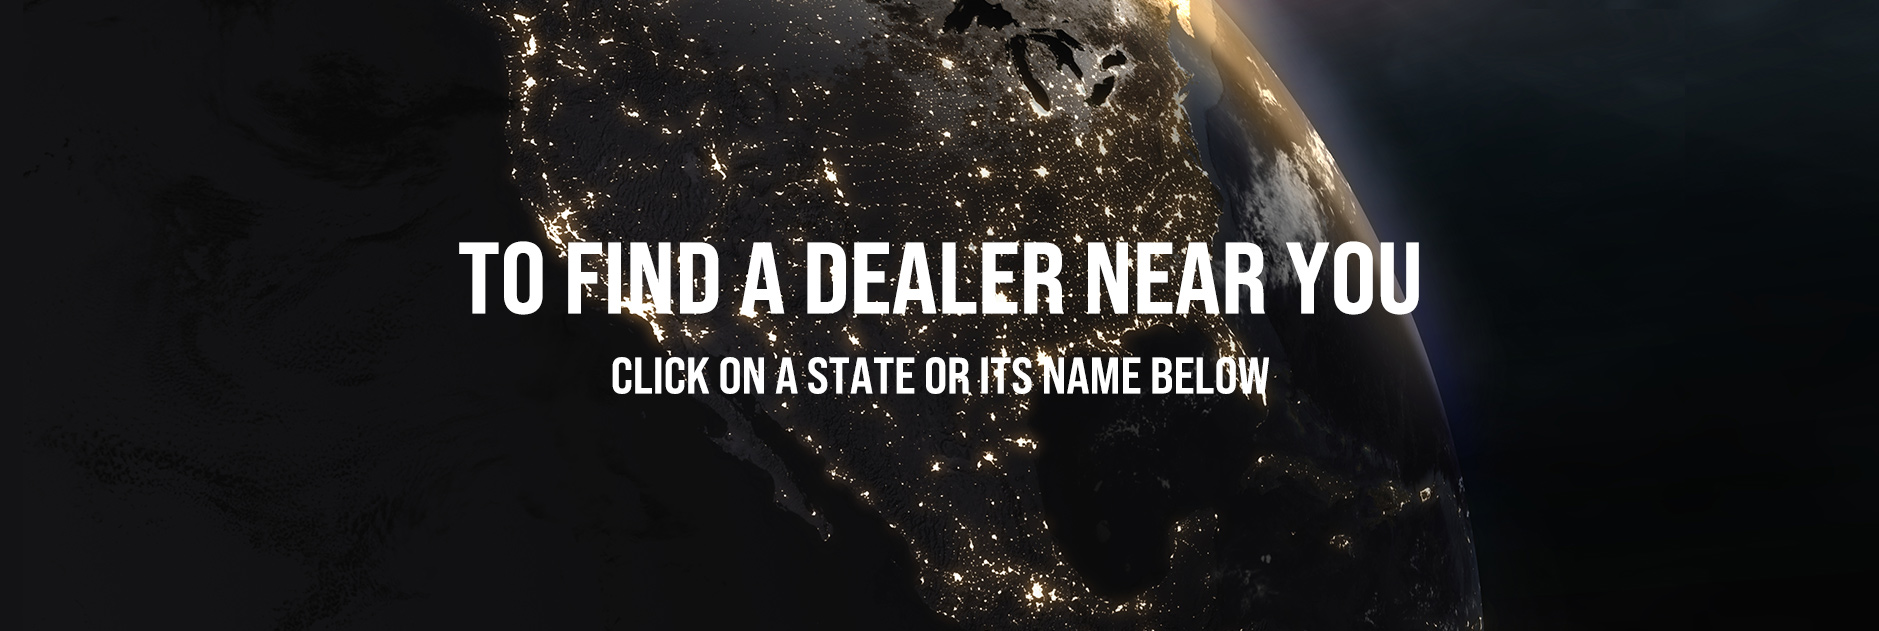 Dealer-Locator